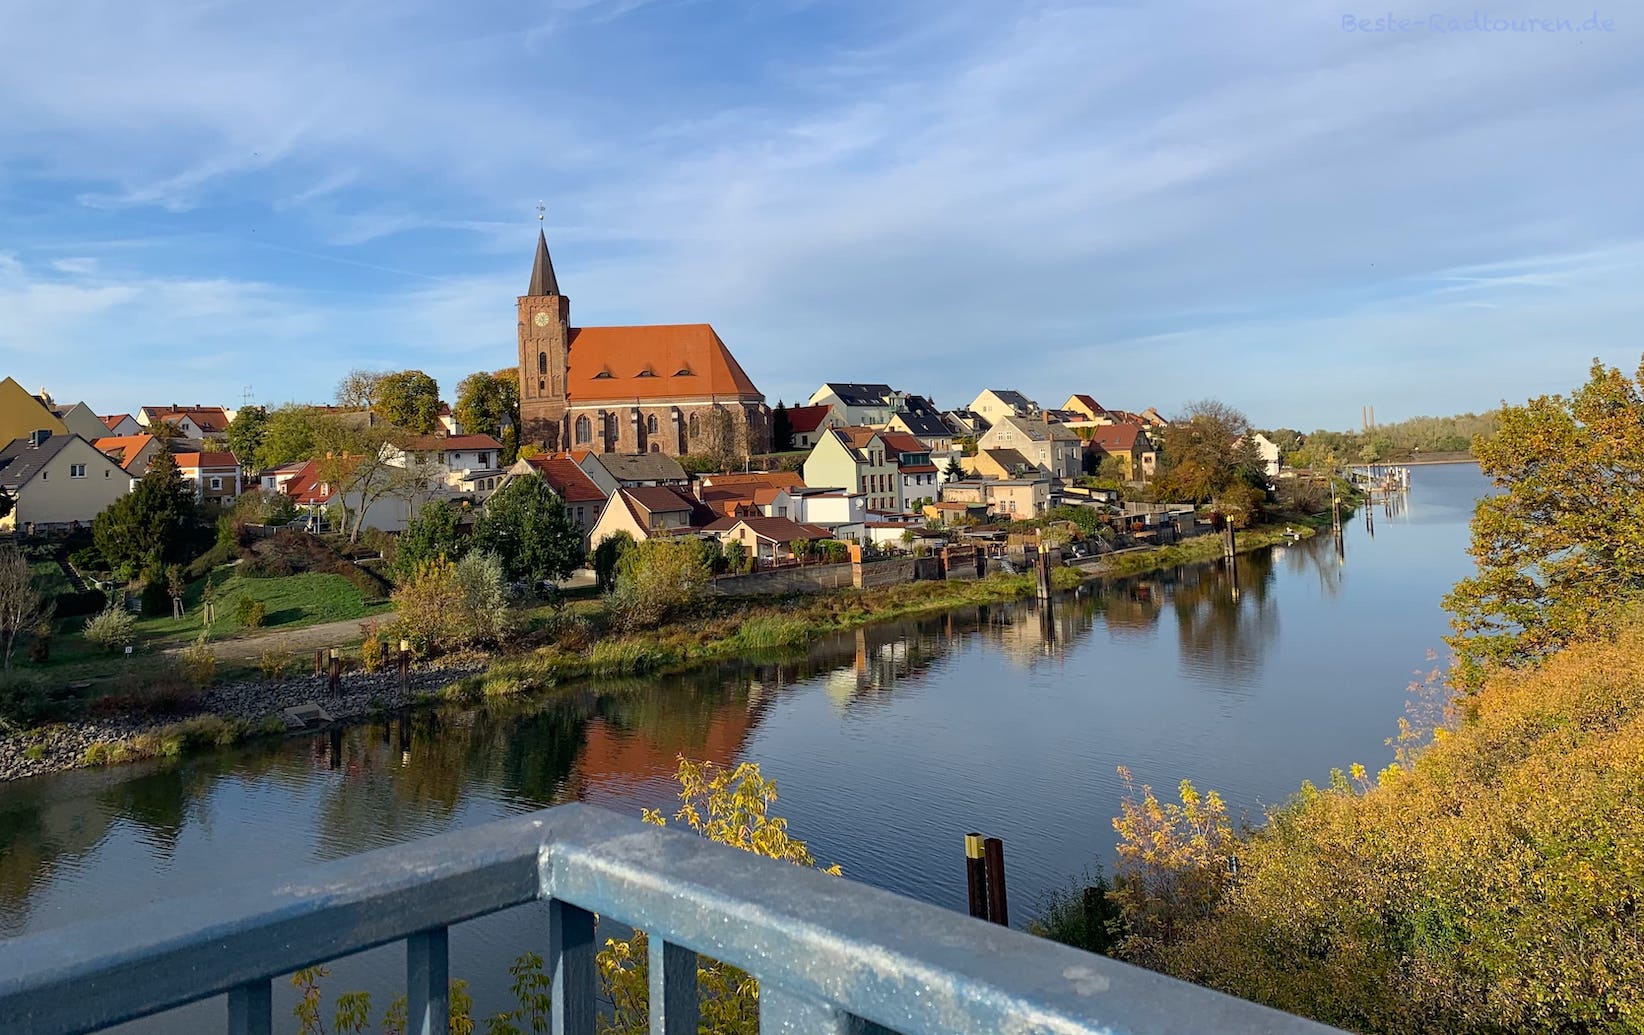 Fürstenberg, Stadtteil von Eisenhüttenstadt, liegt an der Oder - Foto von der Brücke aus. Im Zentrum die Kirche St. Nikolai